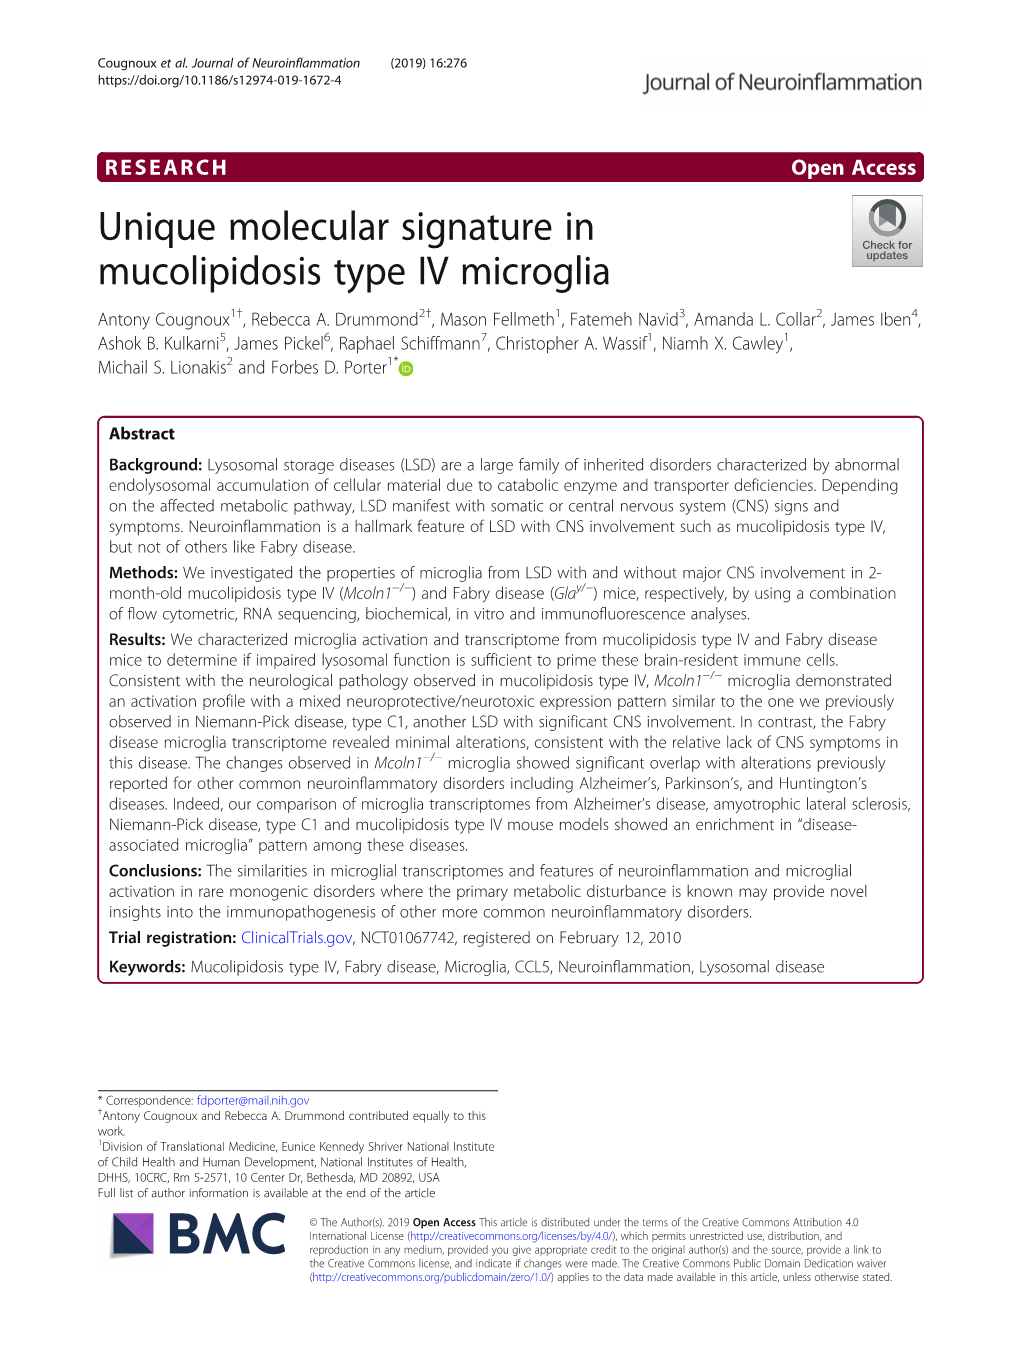 Unique Molecular Signature in Mucolipidosis Type IV Microglia Antony Cougnoux1†, Rebecca A